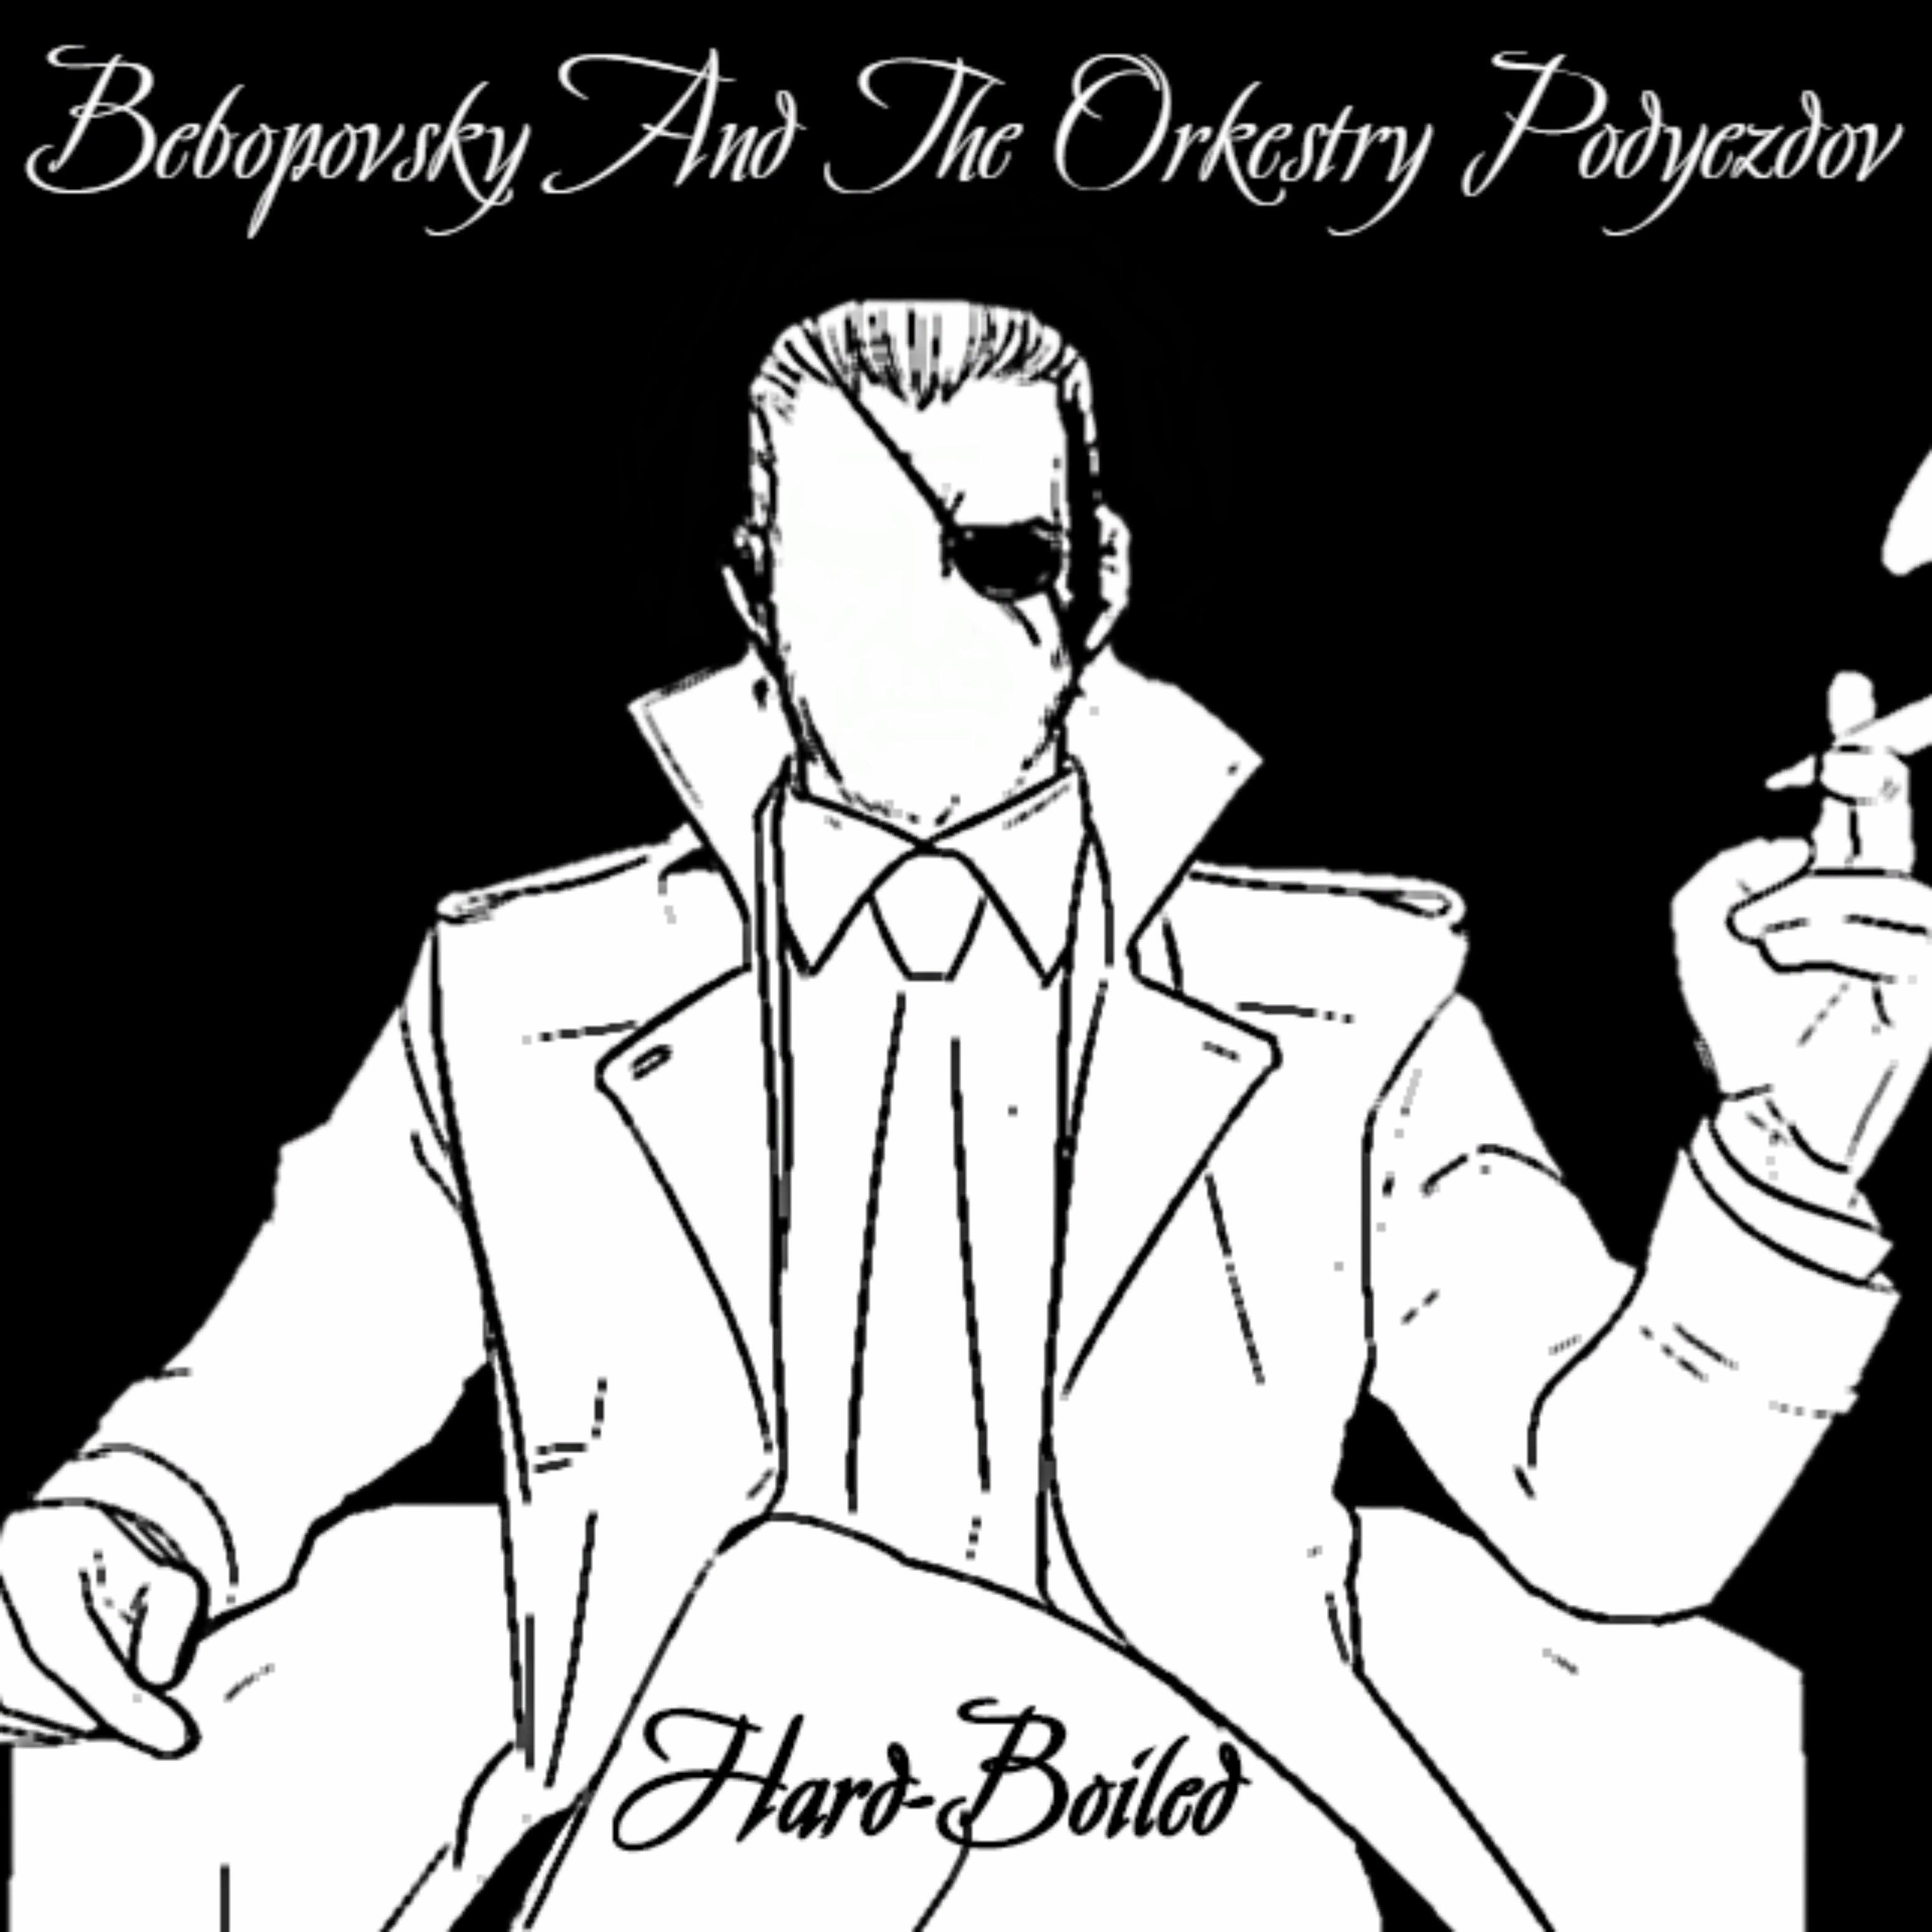 But Bebopovsky Refused to Die